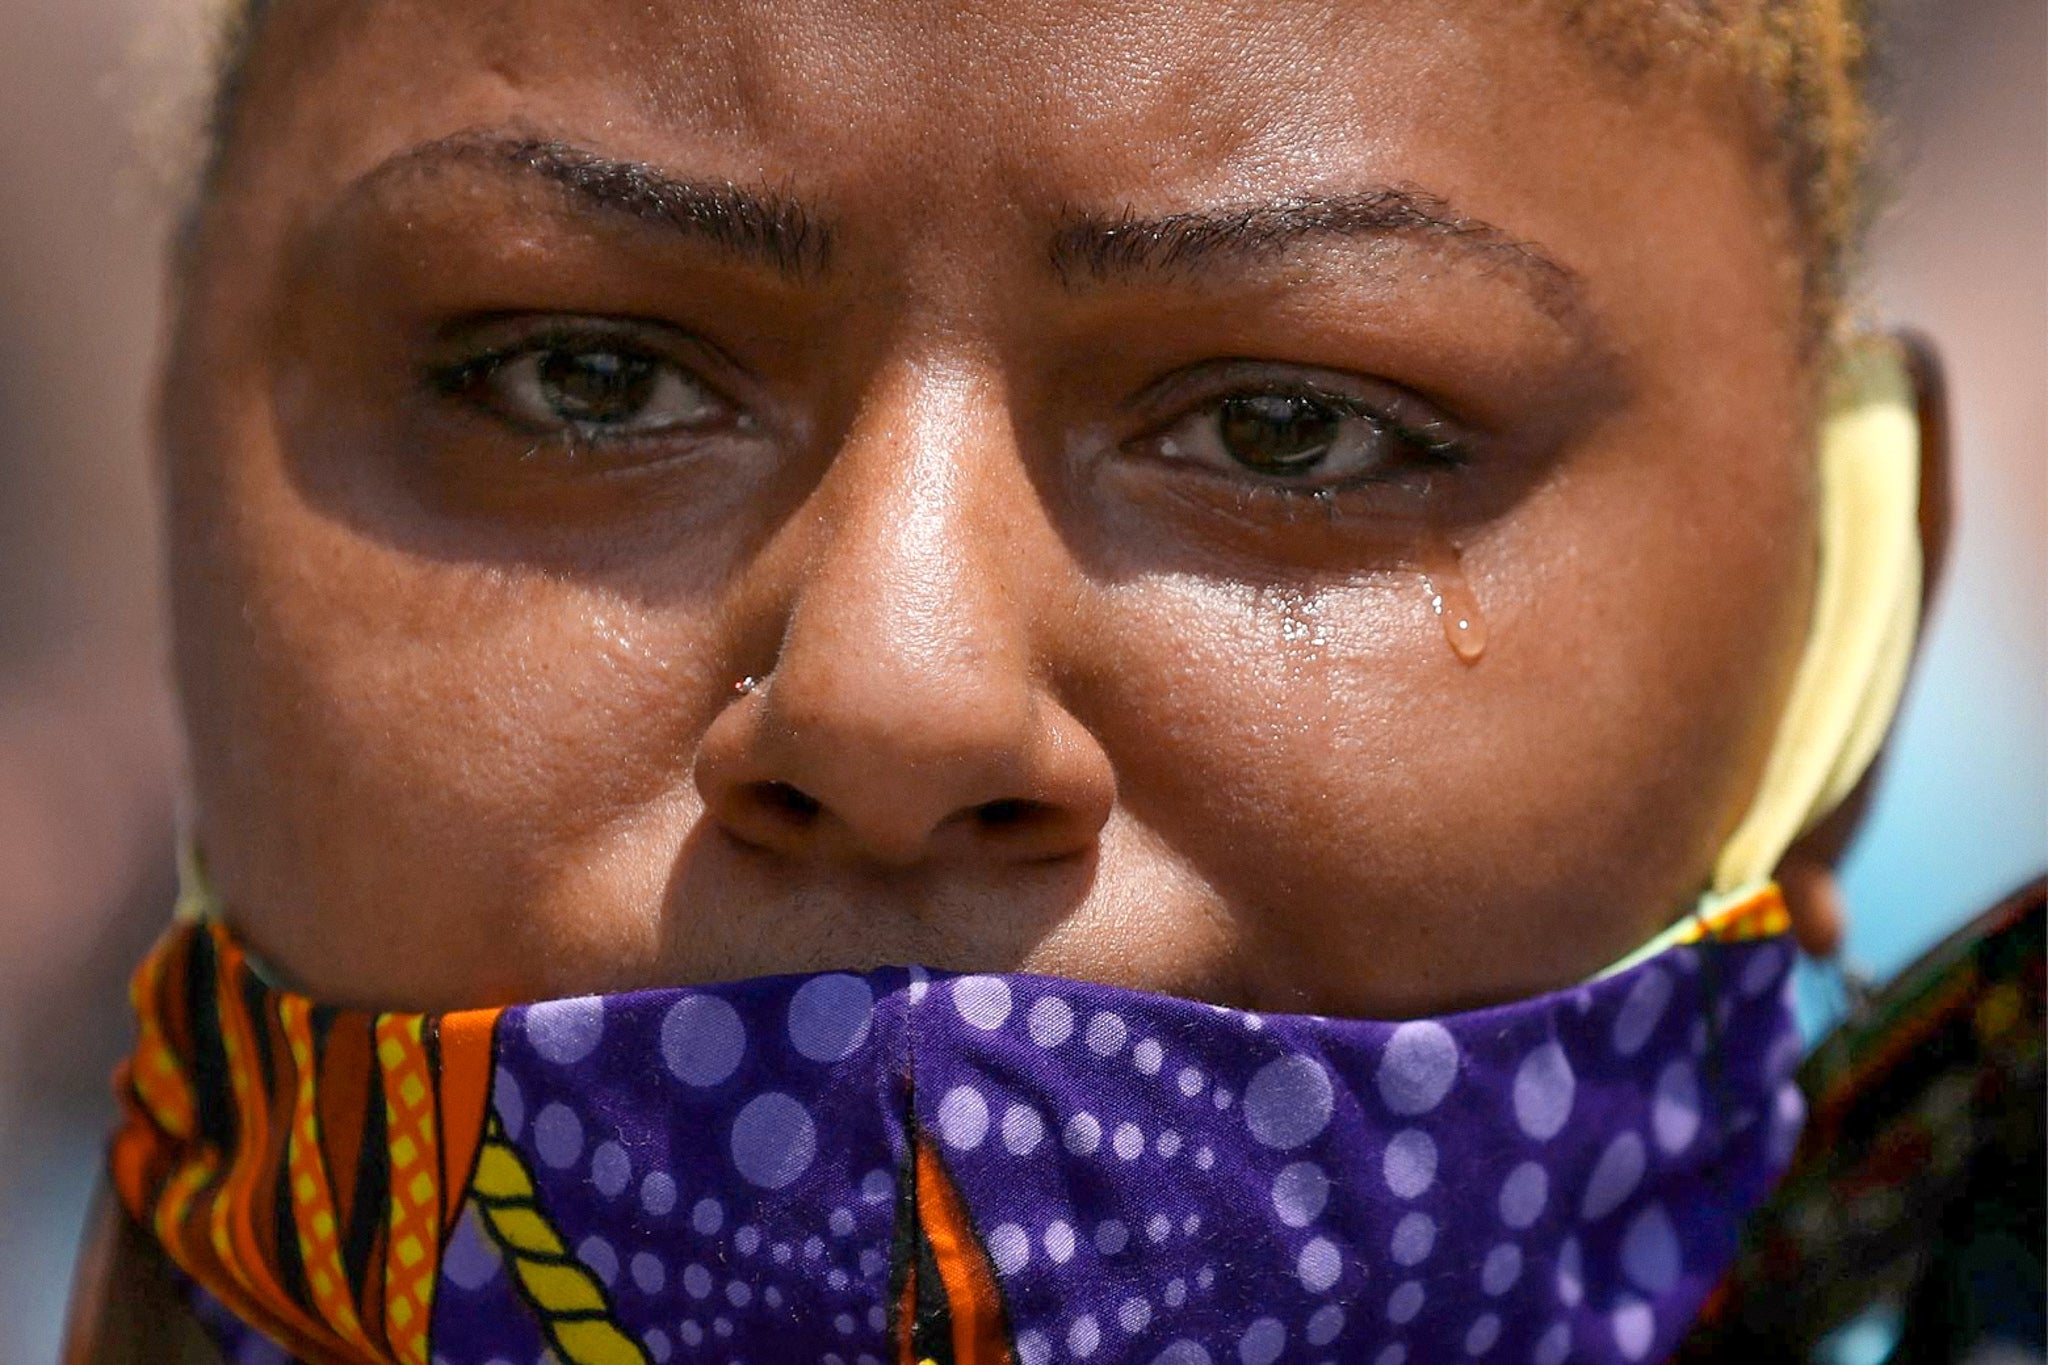 A woman sheds a single tear and wears a purple scarf as a mask.